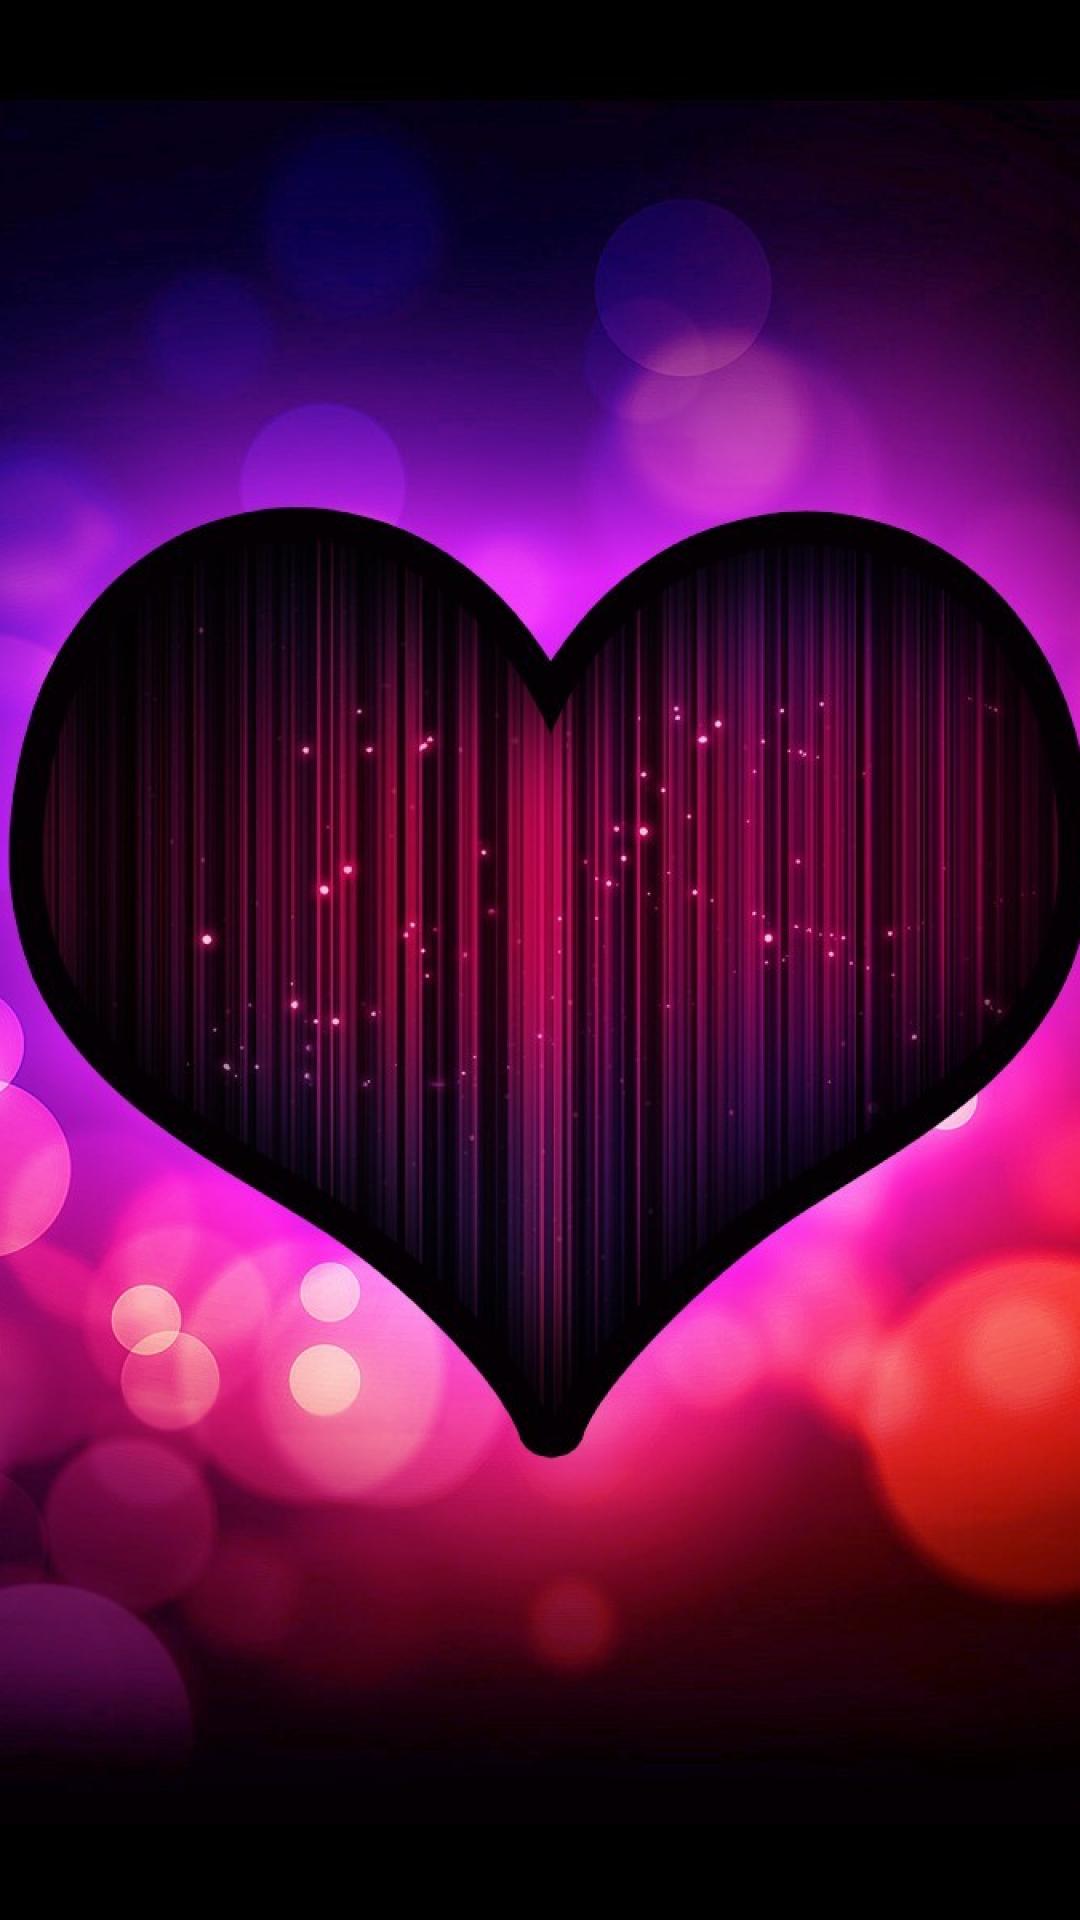 モバイル用の愛の壁紙,心臓,紫の,ピンク,愛,赤